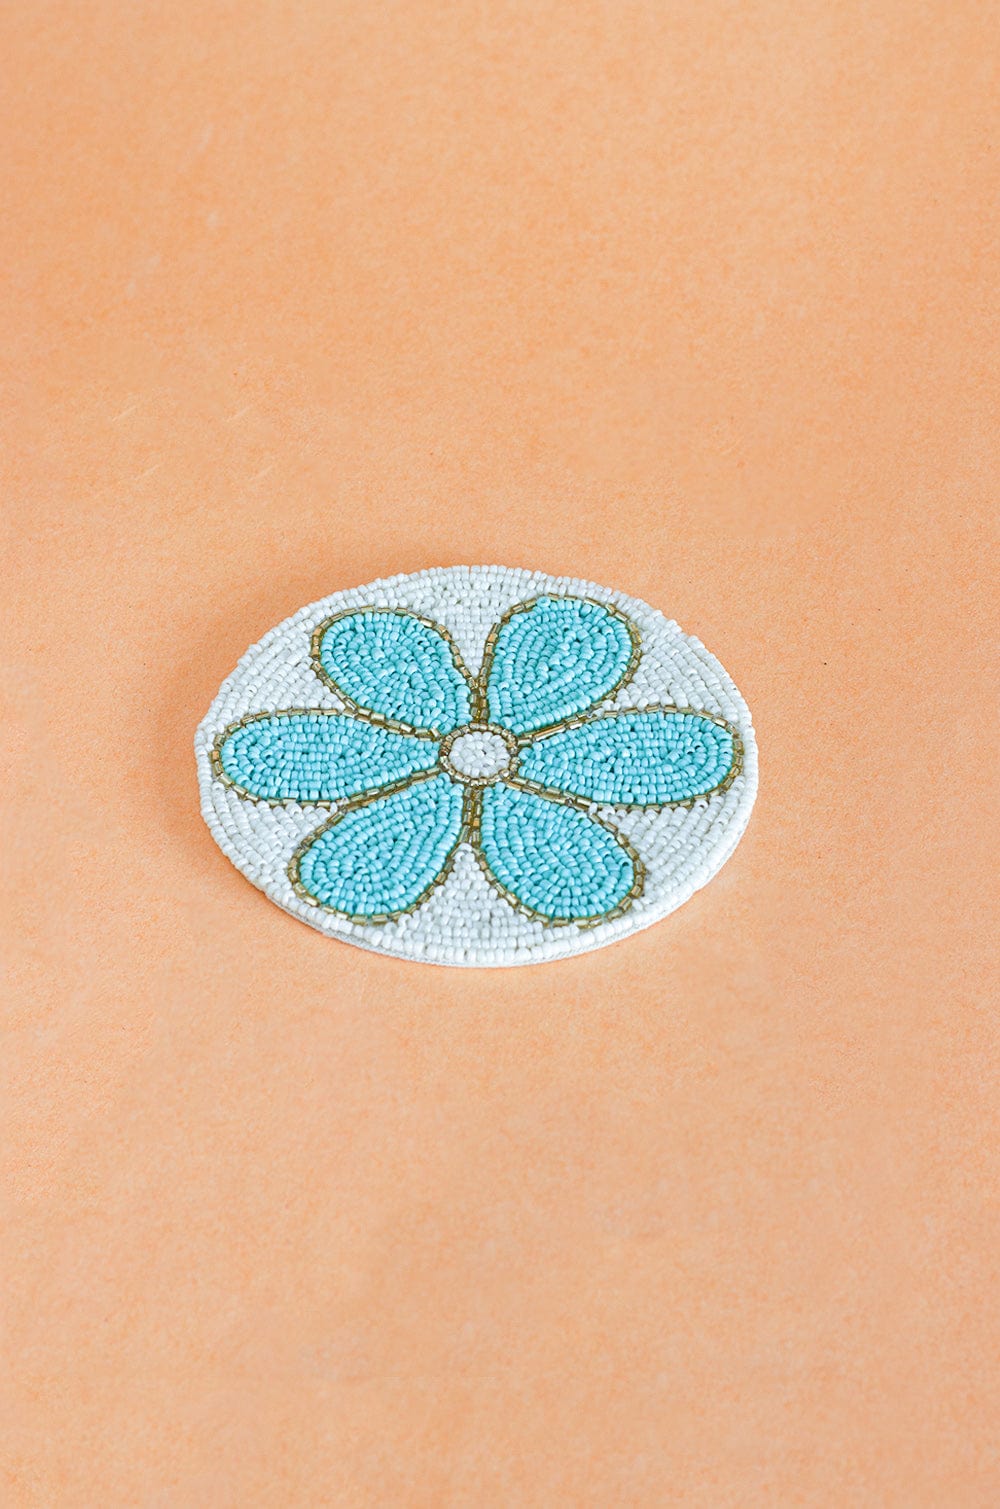 Daisy Hand Embroidery Beaded Coasters -Set of 4